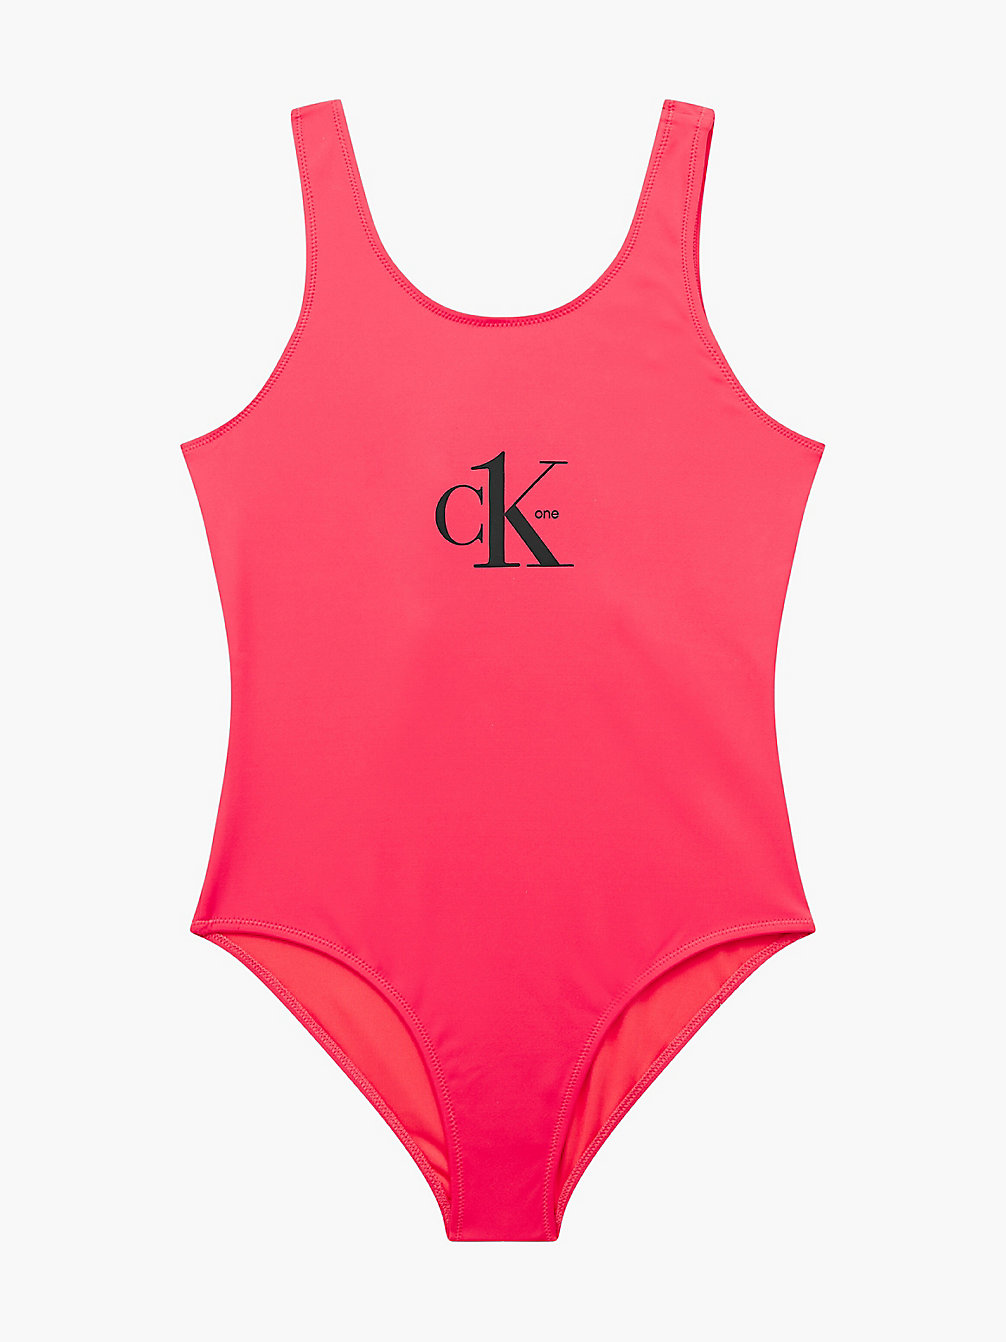 CORAL CRUSH Badeanzug Für Mädchen - CK One undefined Maedchen Calvin Klein